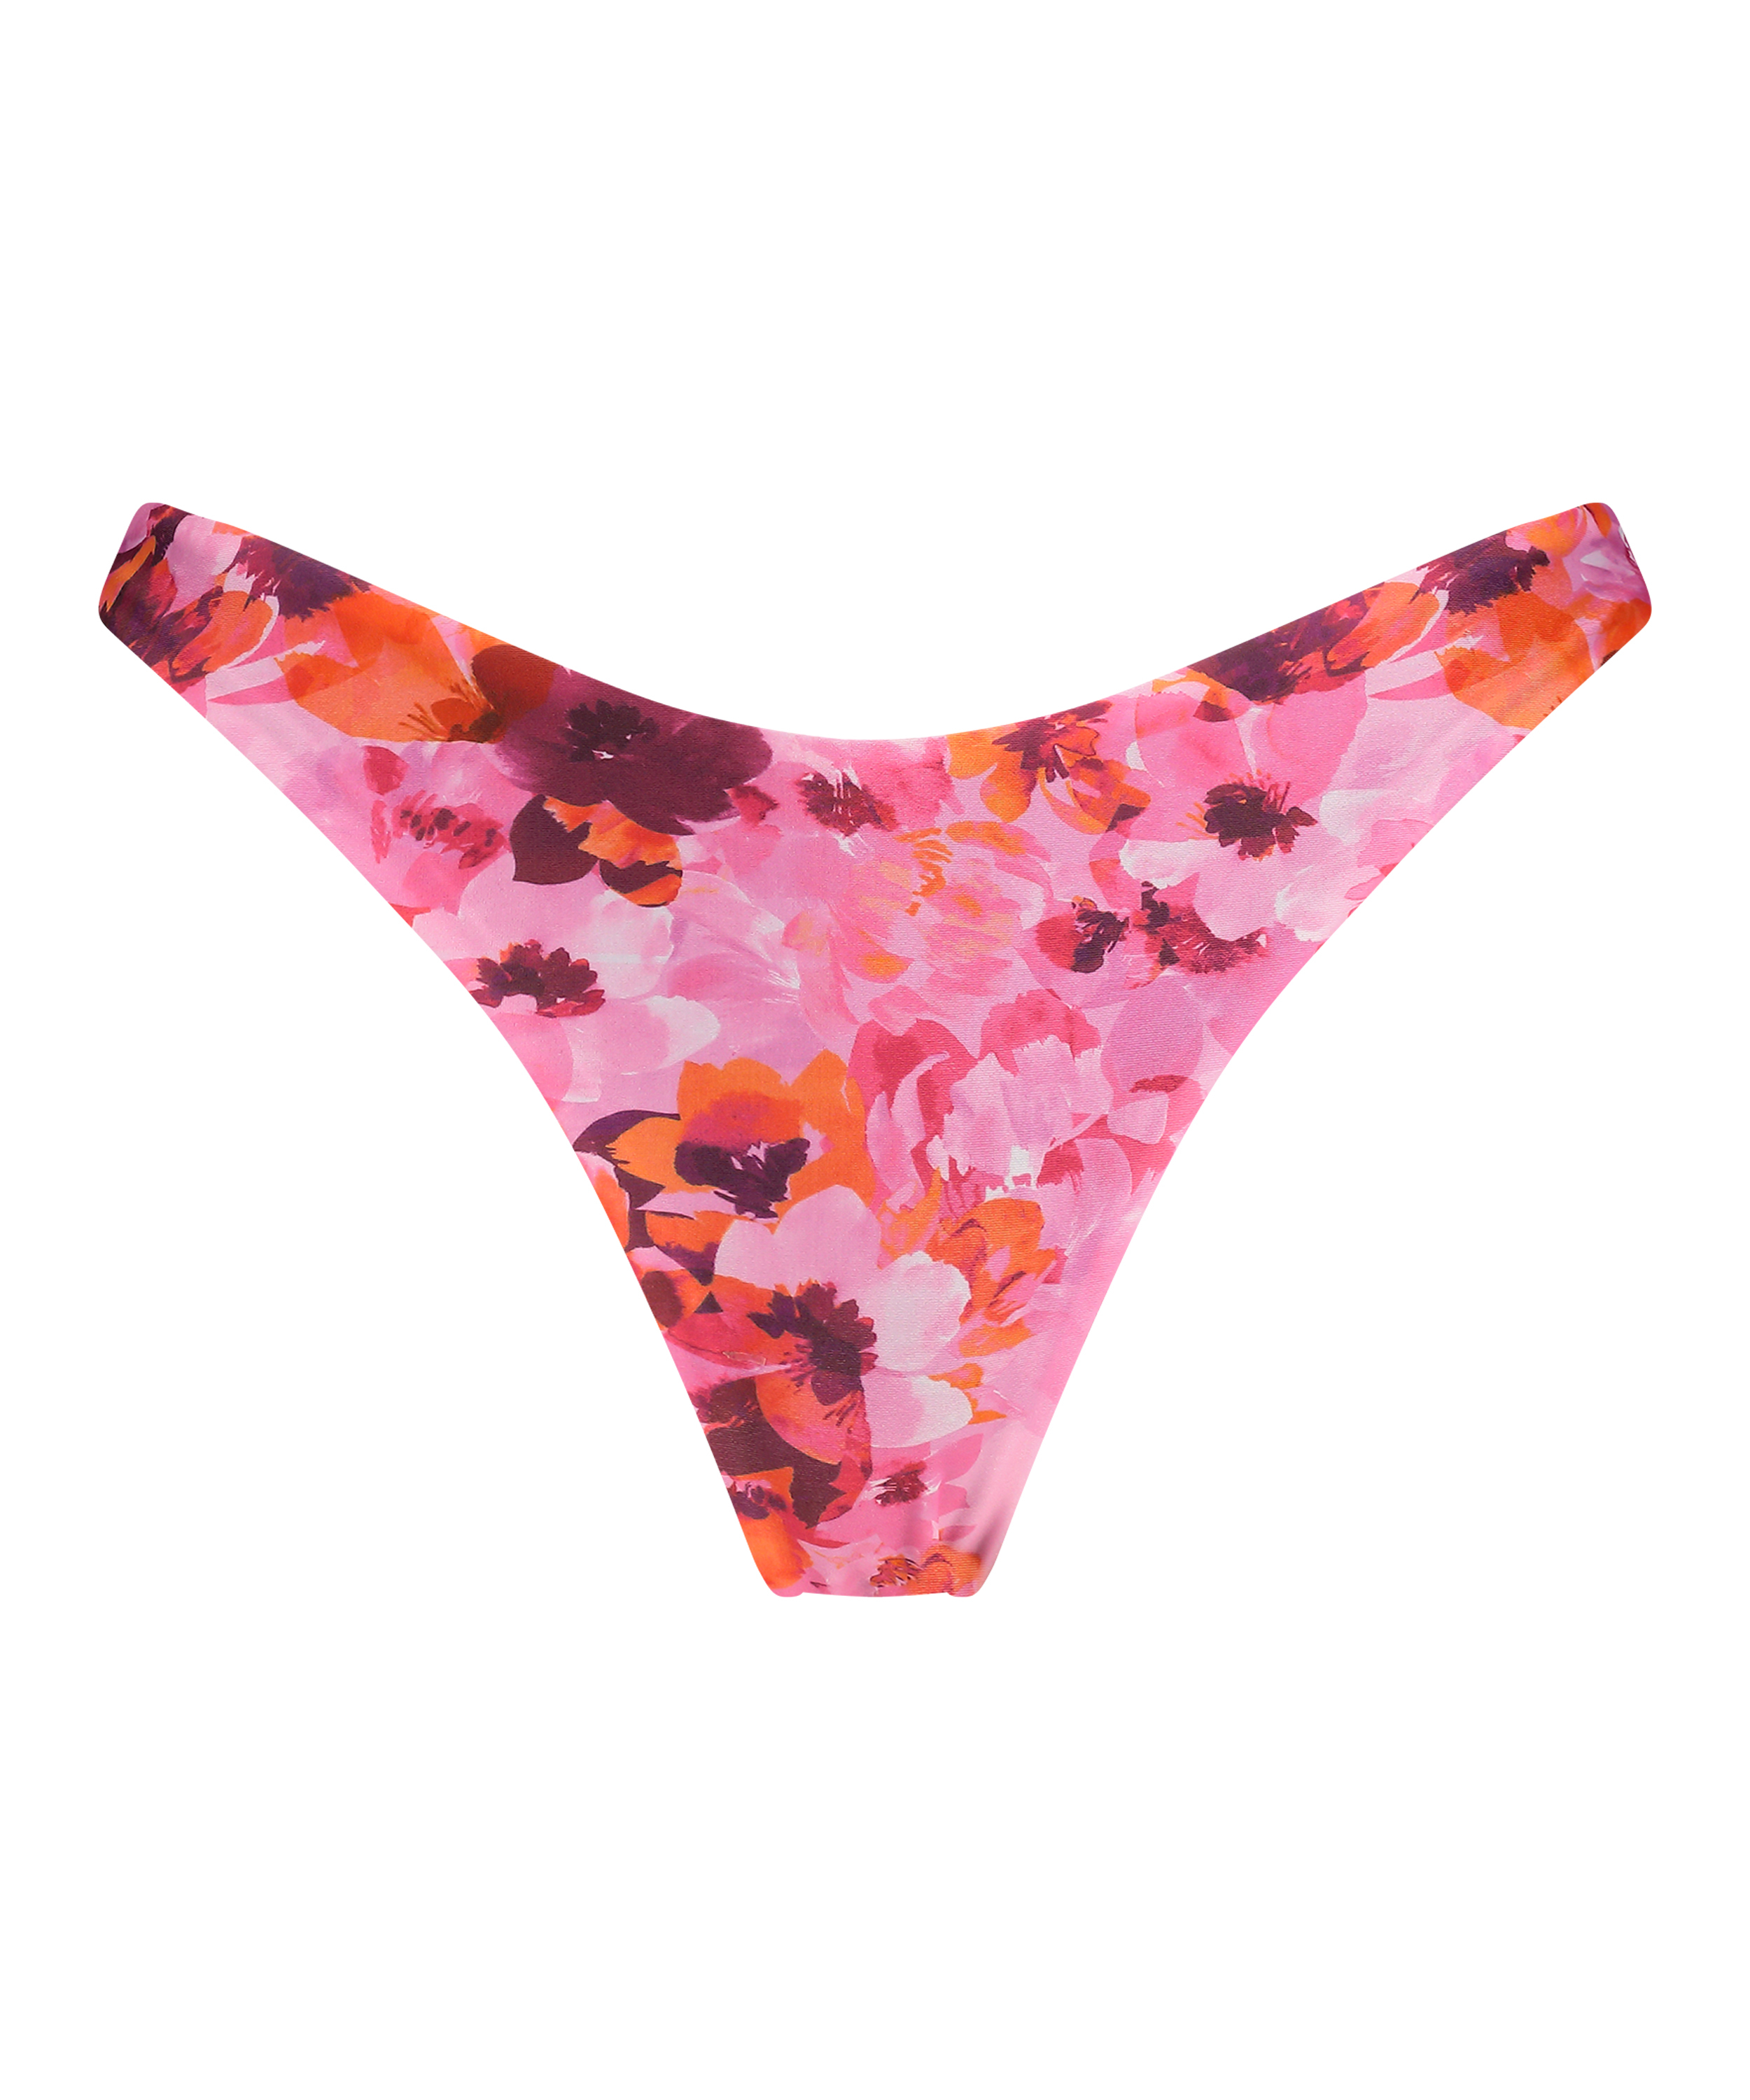 Floral High-Leg Bikini Bottoms, Pink, main